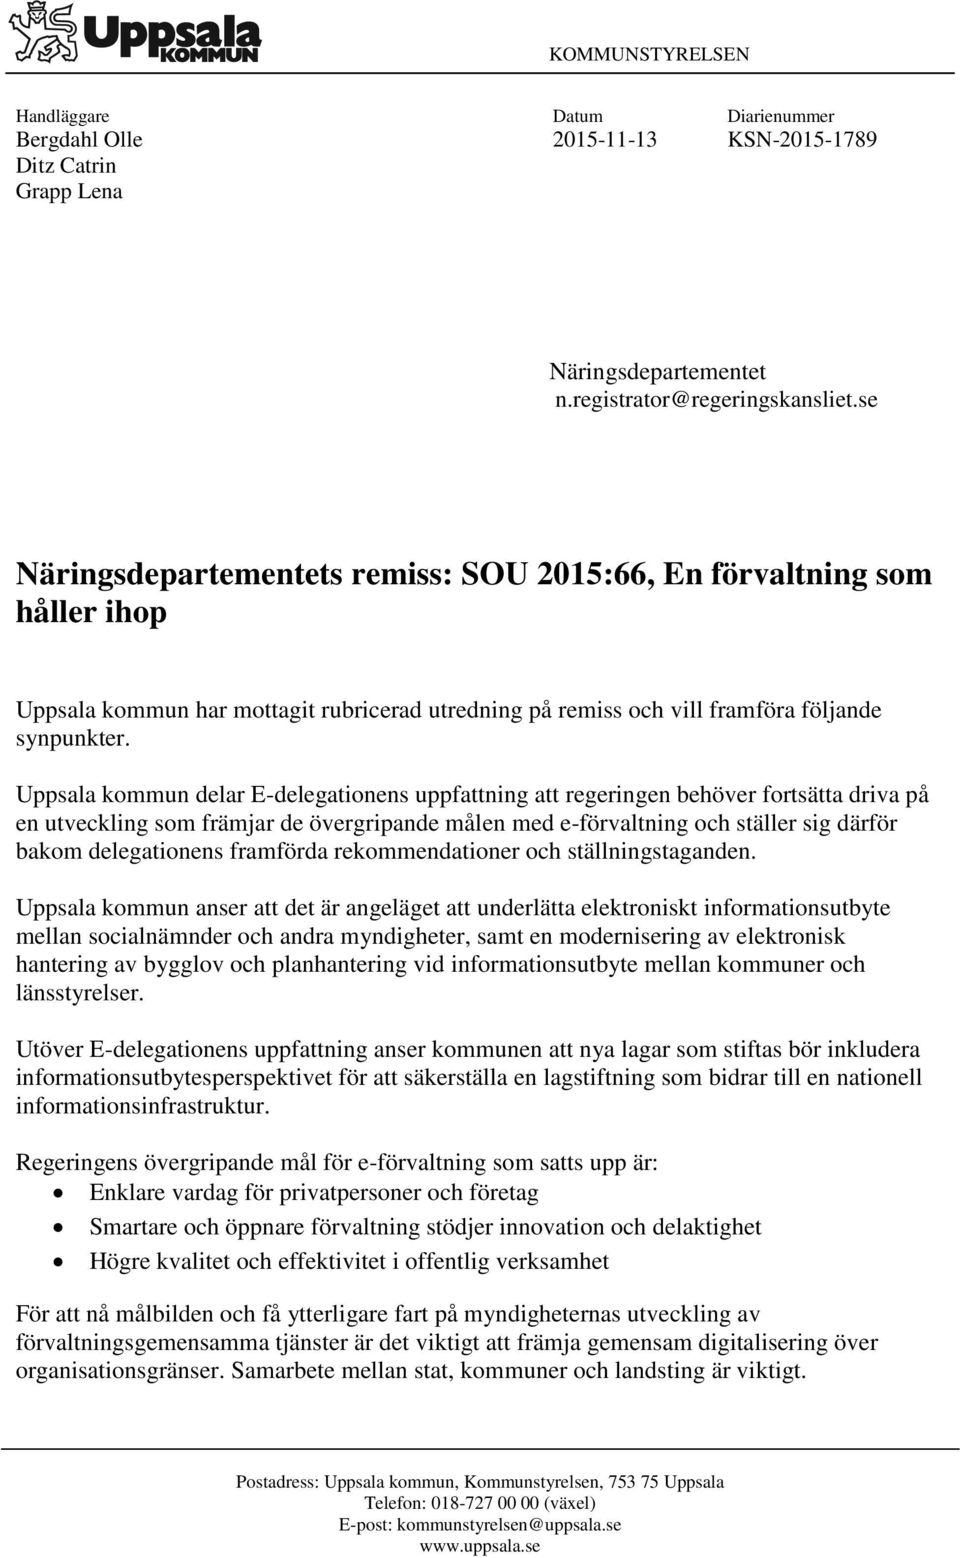 Uppsala kommun delar E-delegationens uppfattning att regeringen behöver fortsätta driva på en utveckling som främjar de övergripande målen med e-förvaltning och ställer sig därför bakom delegationens